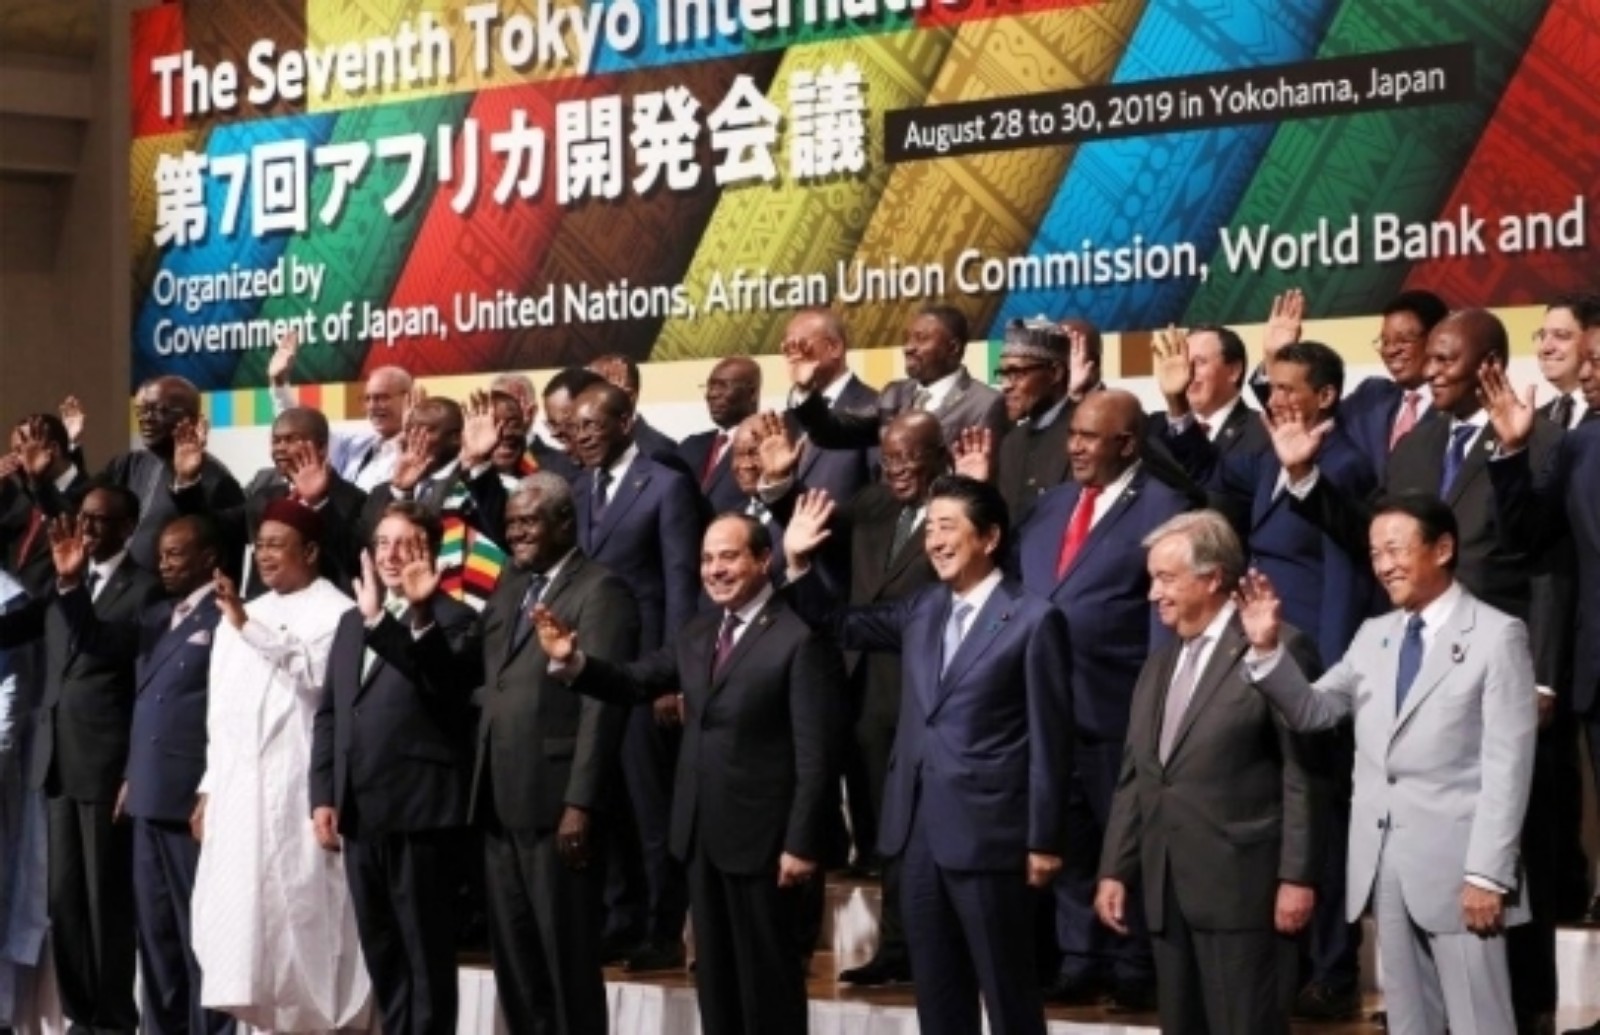 دول إفريقية تتضامن مع المغرب وتخفض مستوى مشاركتها في مؤتمر “تيكاد” بتونس